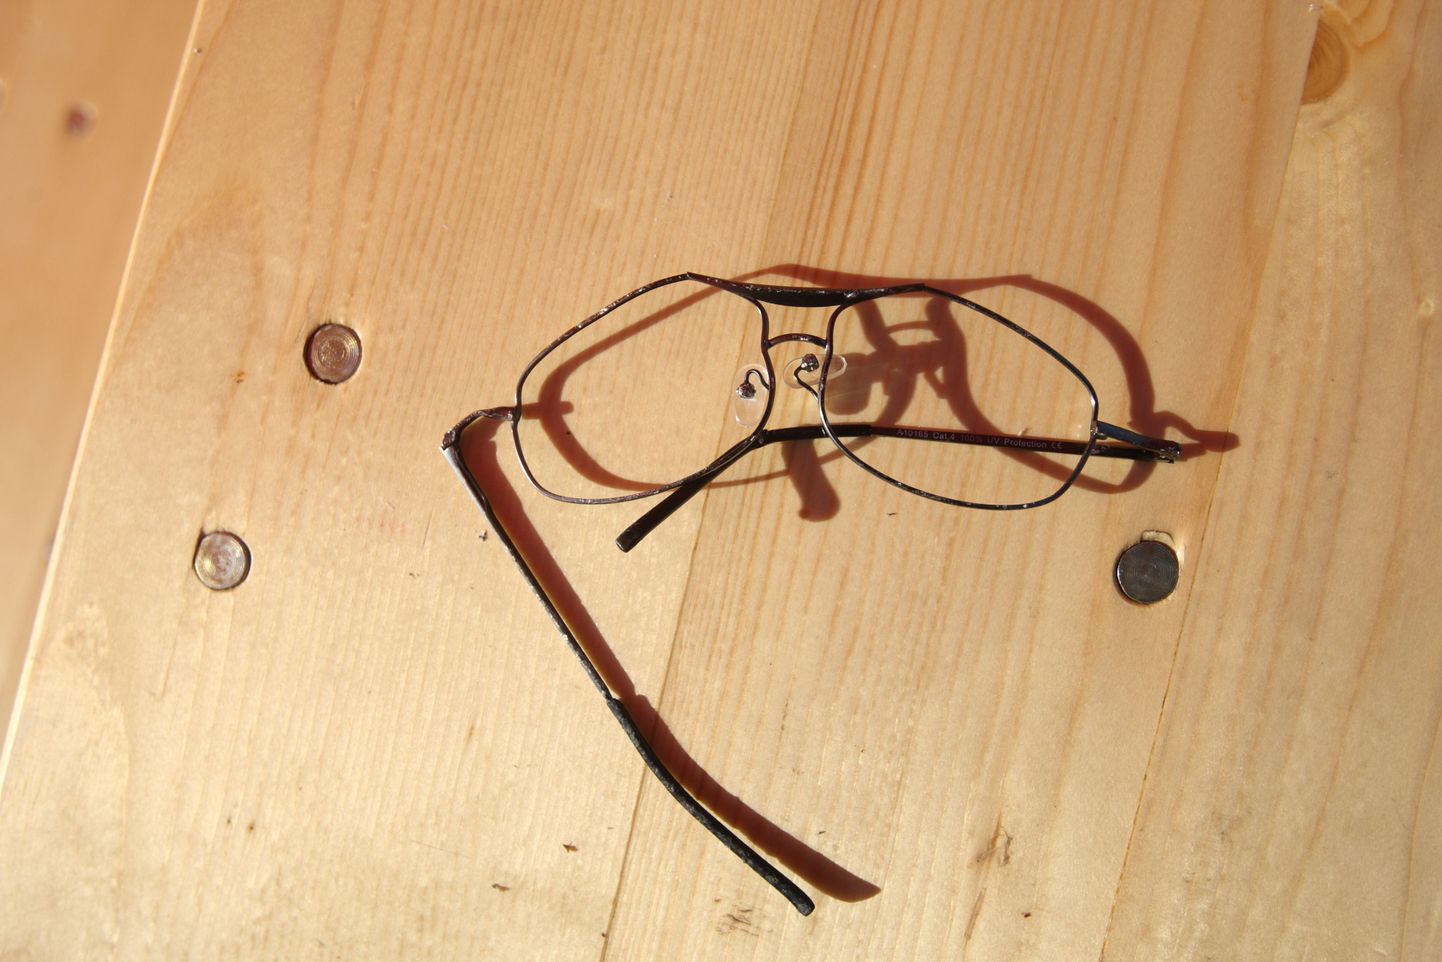 Fazeri Tallinna tehase töötaja prillid kukkusid musta leiva taignasse.